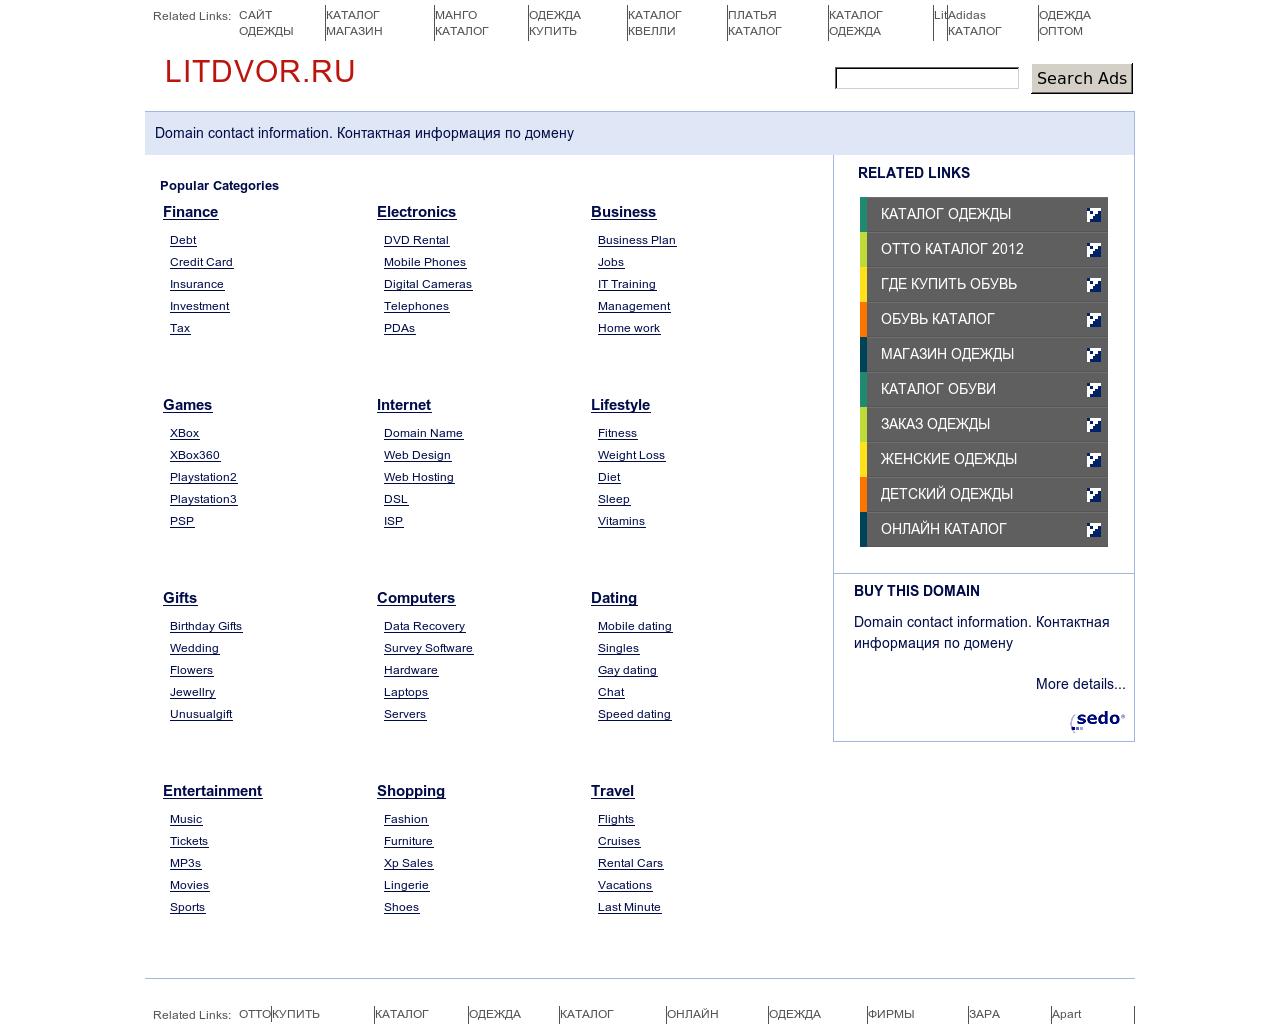 Изображение сайта litdvor.ru в разрешении 1280x1024